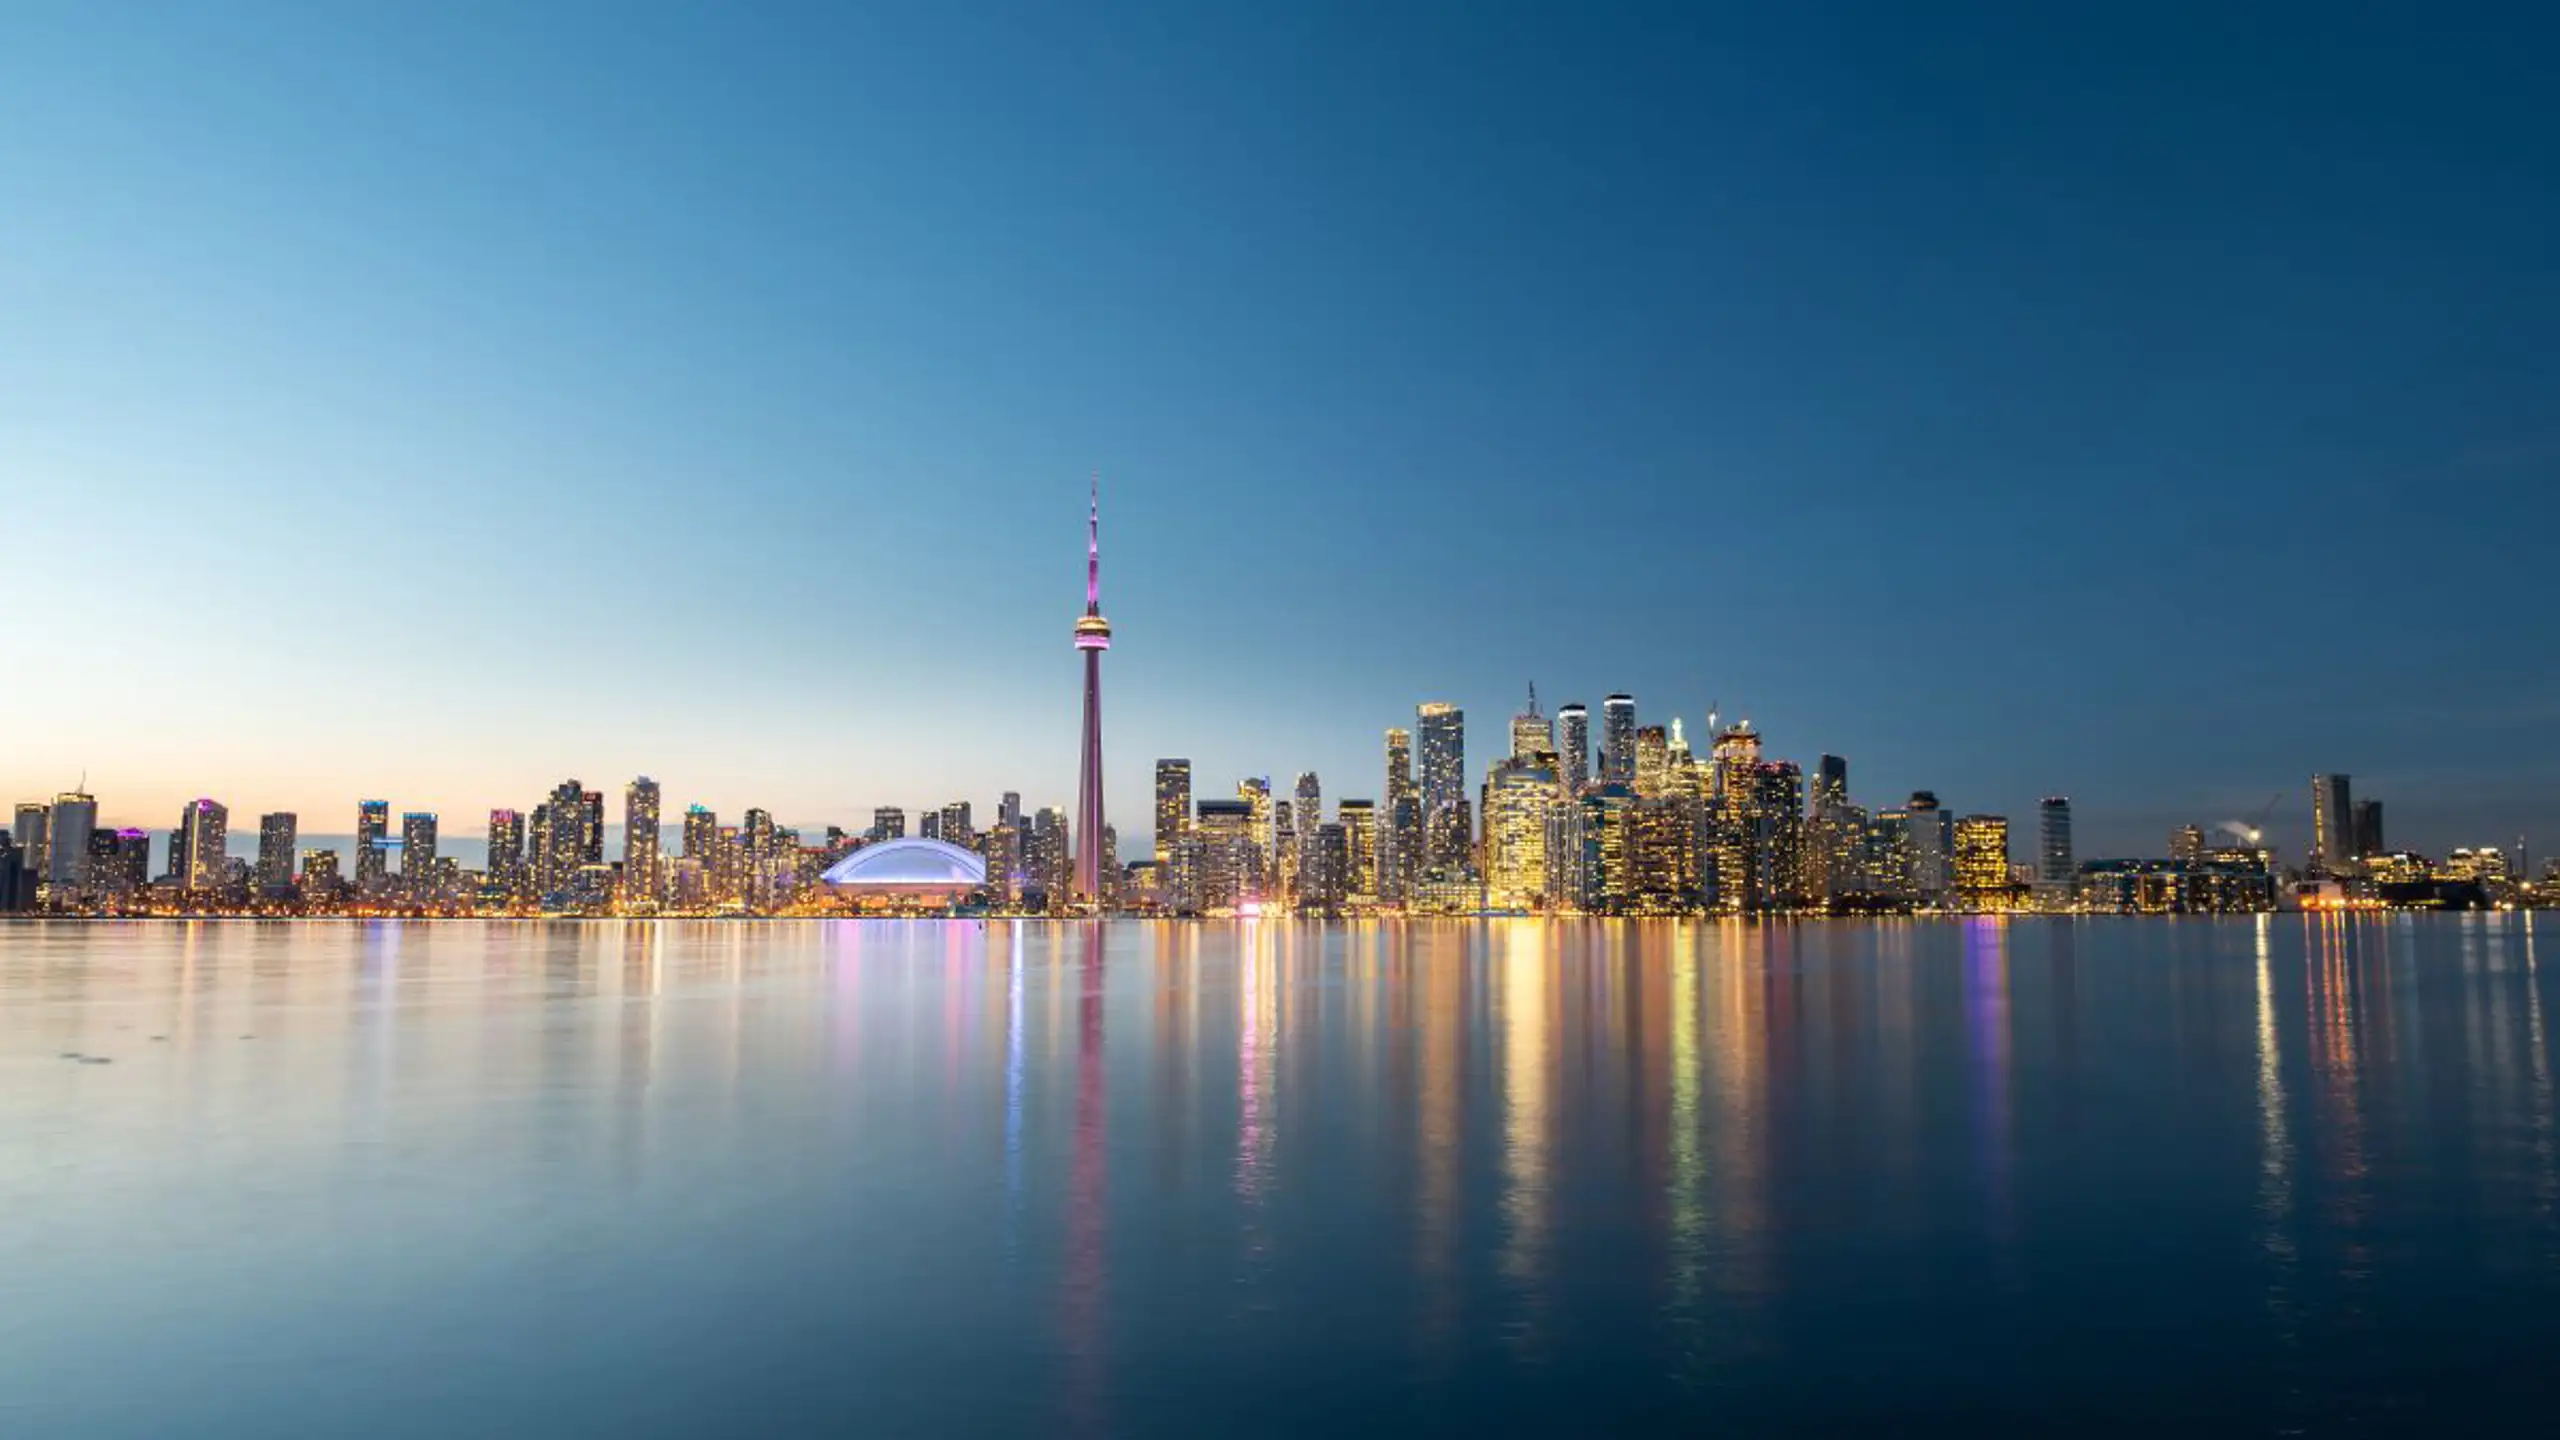 Toronto City Skyline At Night Ontario Canada 2023 11 27 05 30 08 Utc (2)